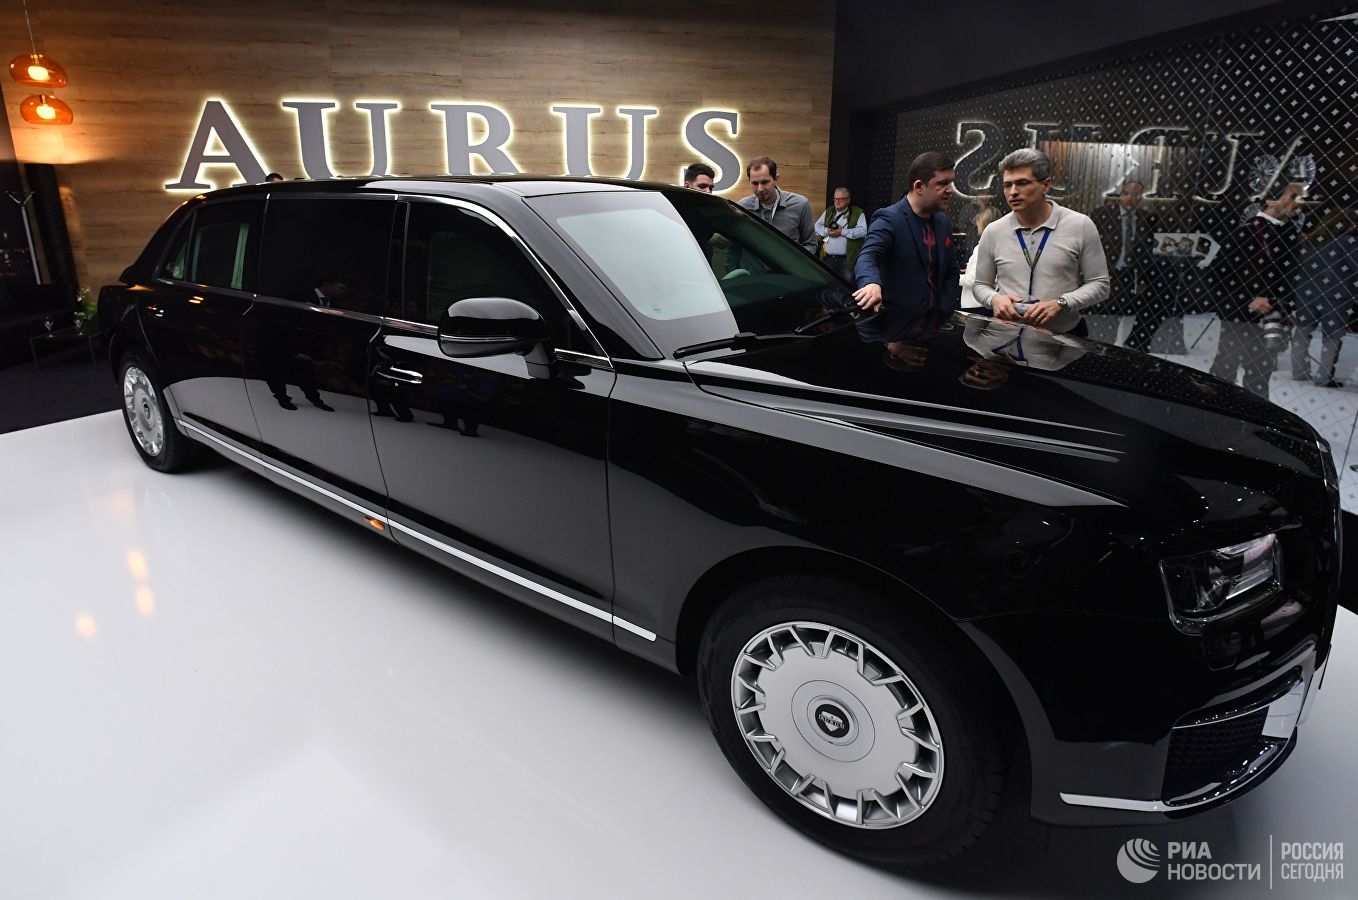 Siêu xe Aurus của Tổng thống Nga Putin tung bản thương mại